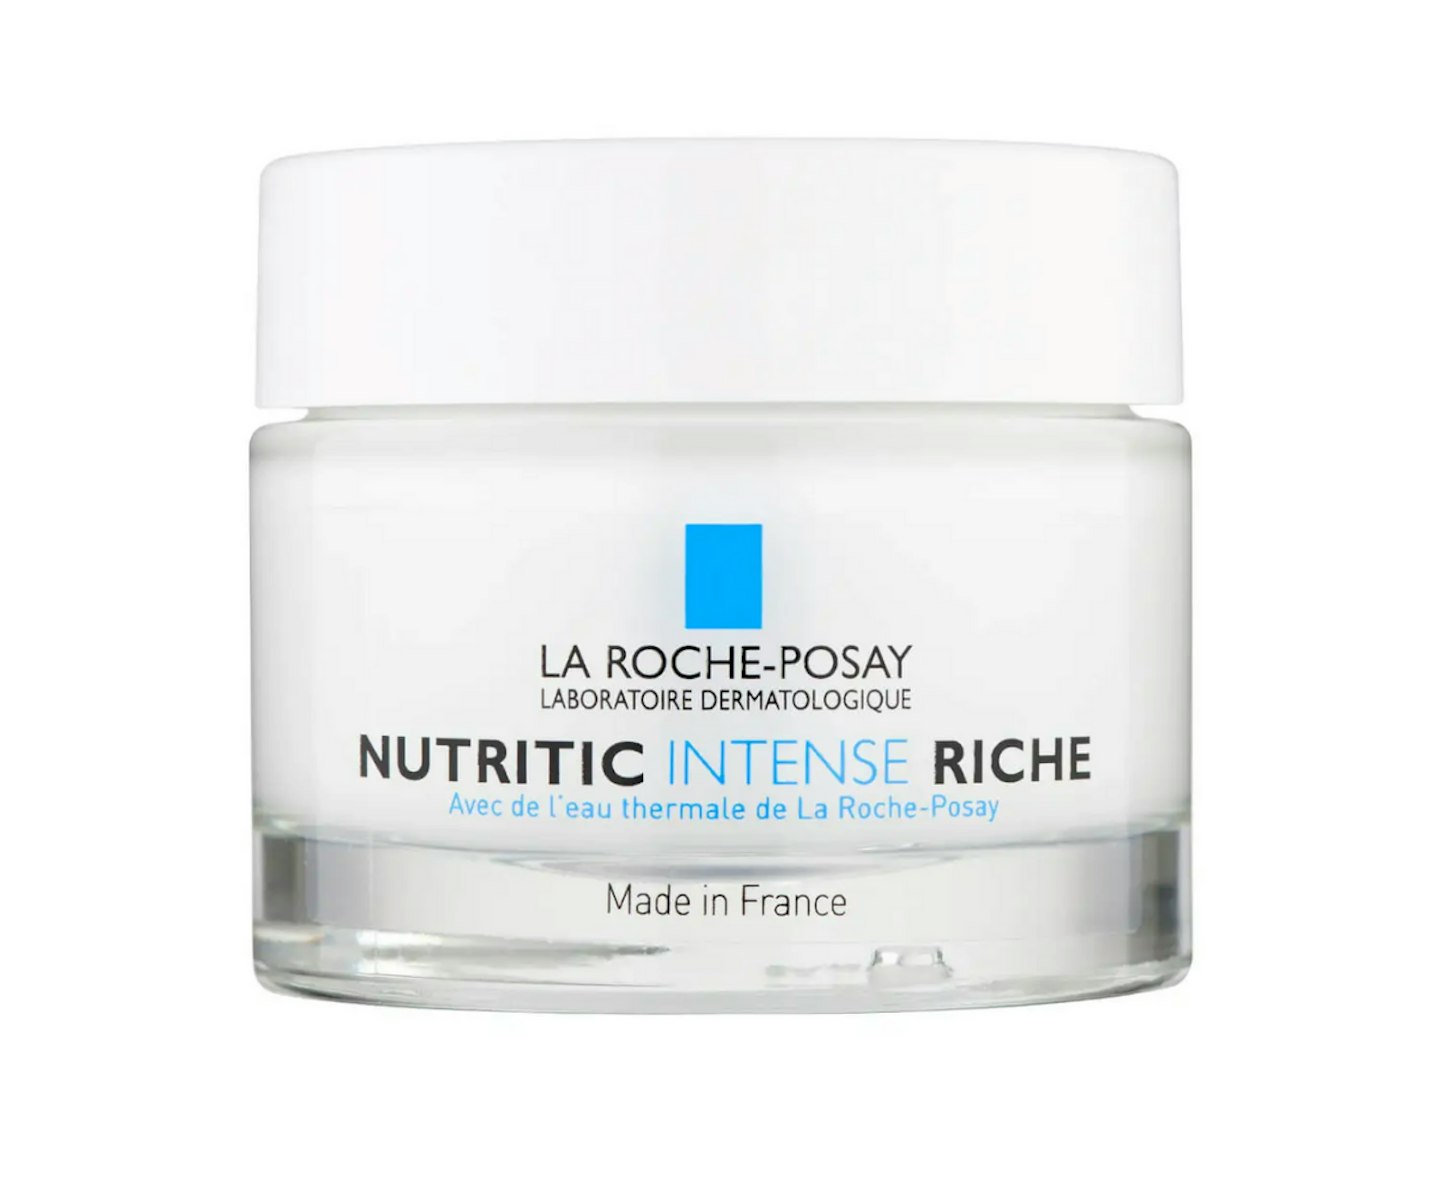 A picture of the La Roche-Posay Nutritic Intense Moisturiser Riche